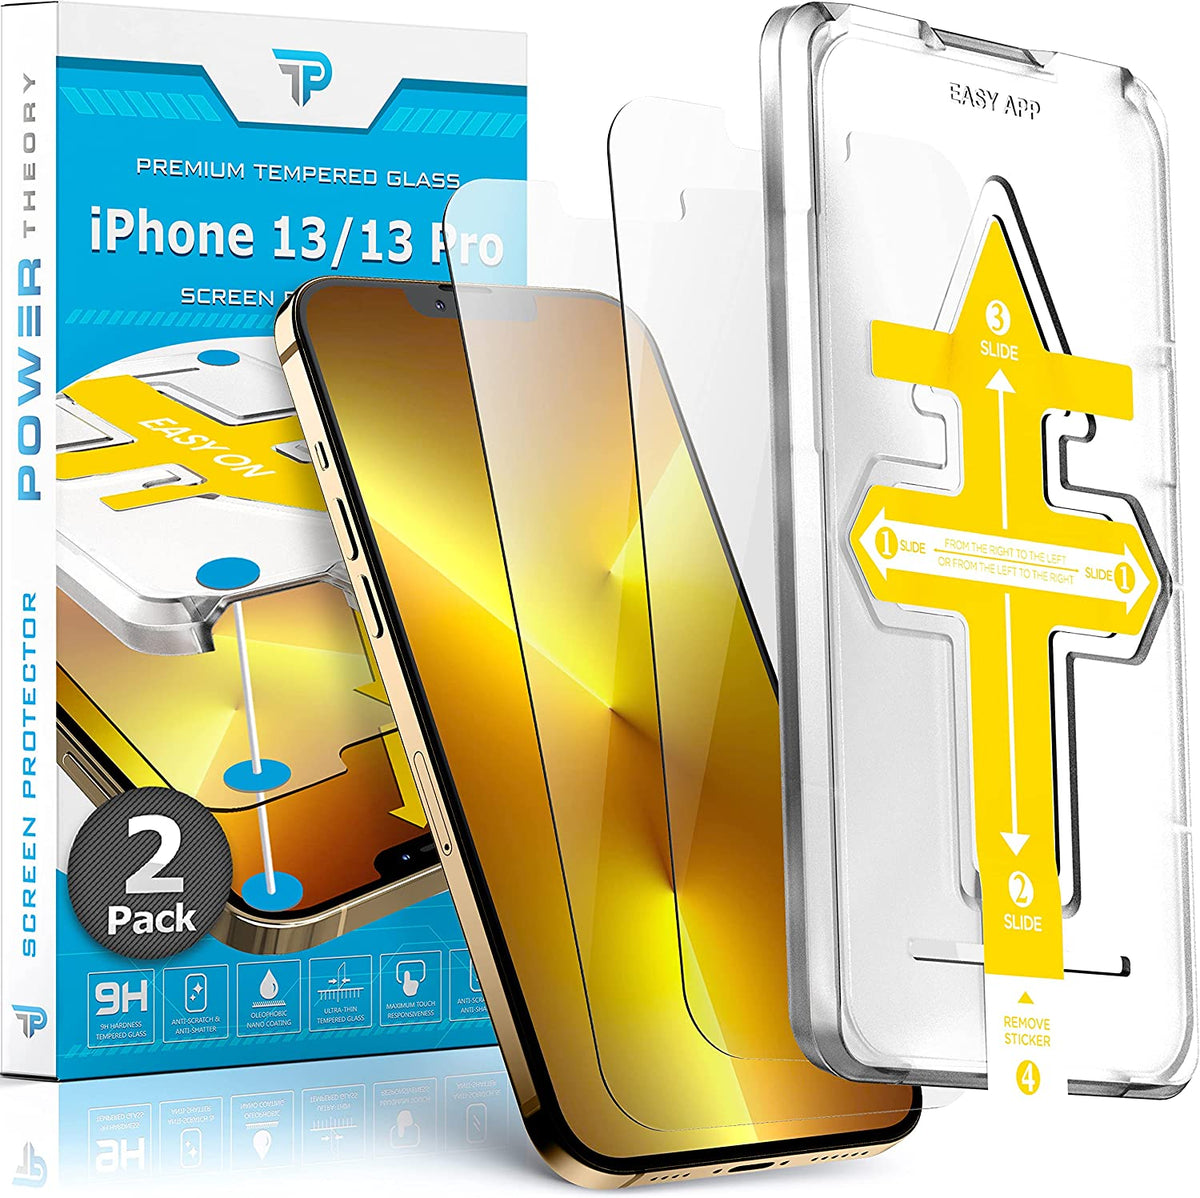 Power Theory Schutzfolie kompatibel mit iPhone 13 Pro/iPhone 13 [2 Stück] -  mit Anbringhilfe, Glas Folie, Displayschutzfolie, Schutzglas mit Schablone Cover